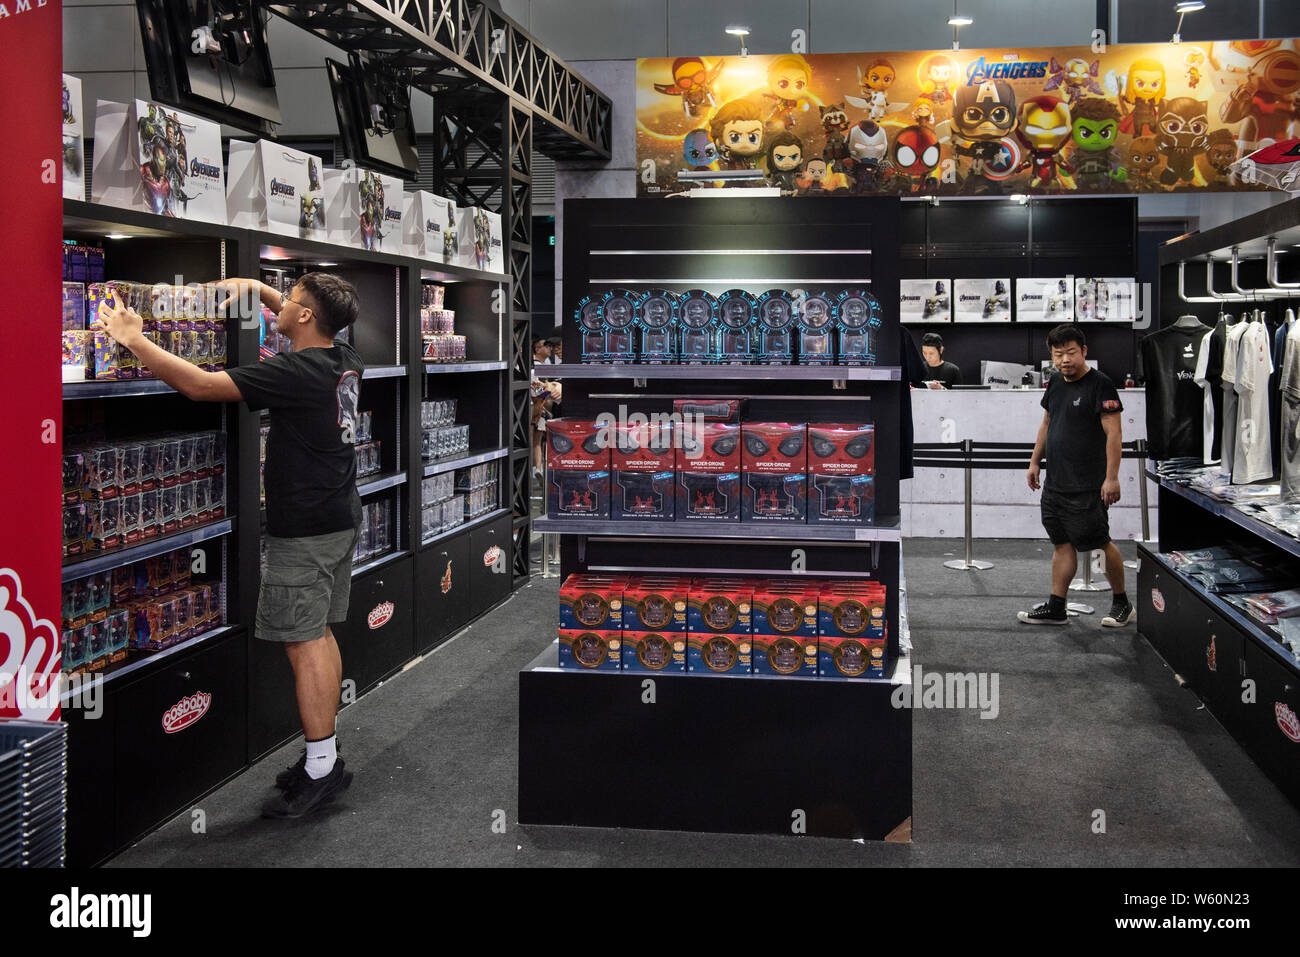 Disney's Marvel Studio empleados son vistos en su tienda de venta mercancías y coleccionables de edición limitada durante el evento Ani-Com & Games en Hong Kong Fotografía de stock - Alamy